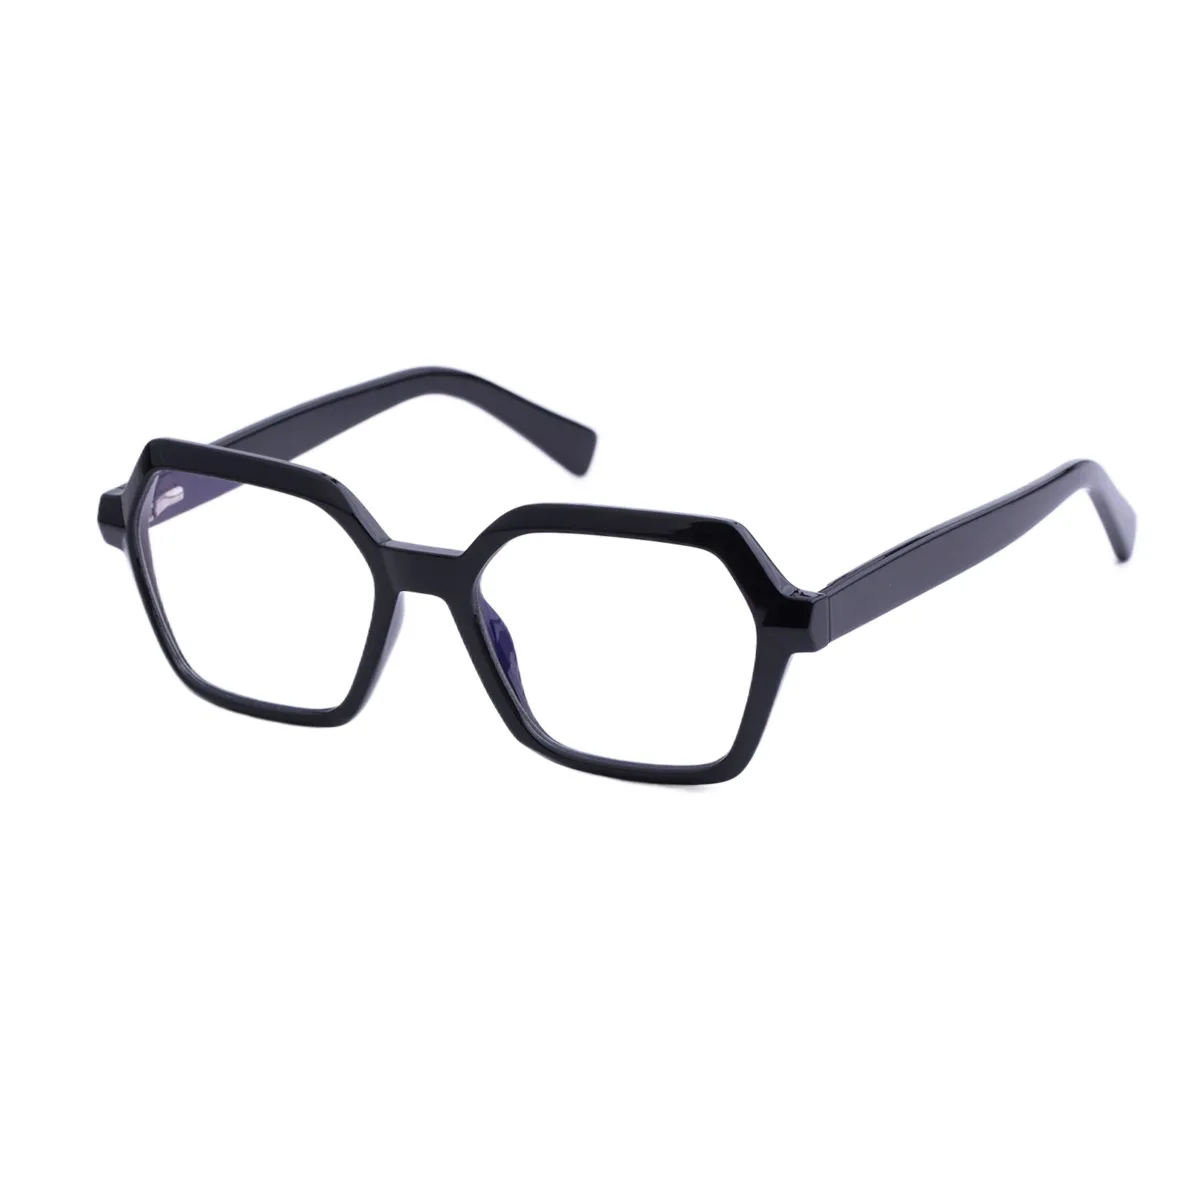 Riva - Geometric Black Glasses for Men & Women